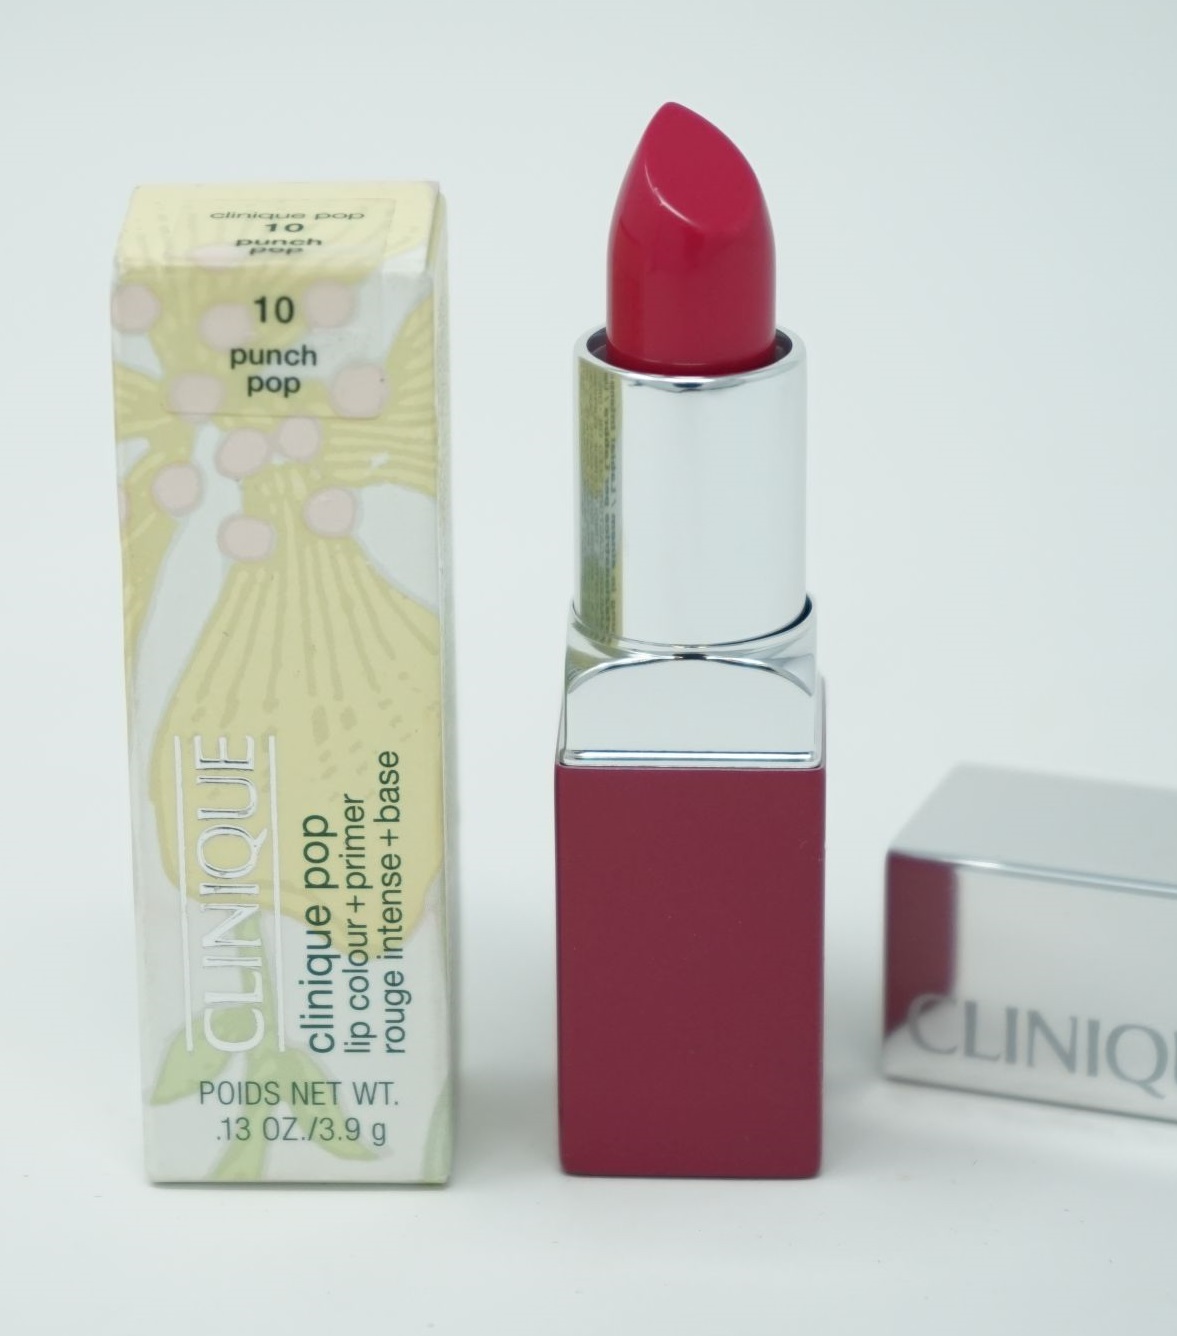 Clinique Pop Lip Colour Lippenstift  3,9g /10 pumch pop